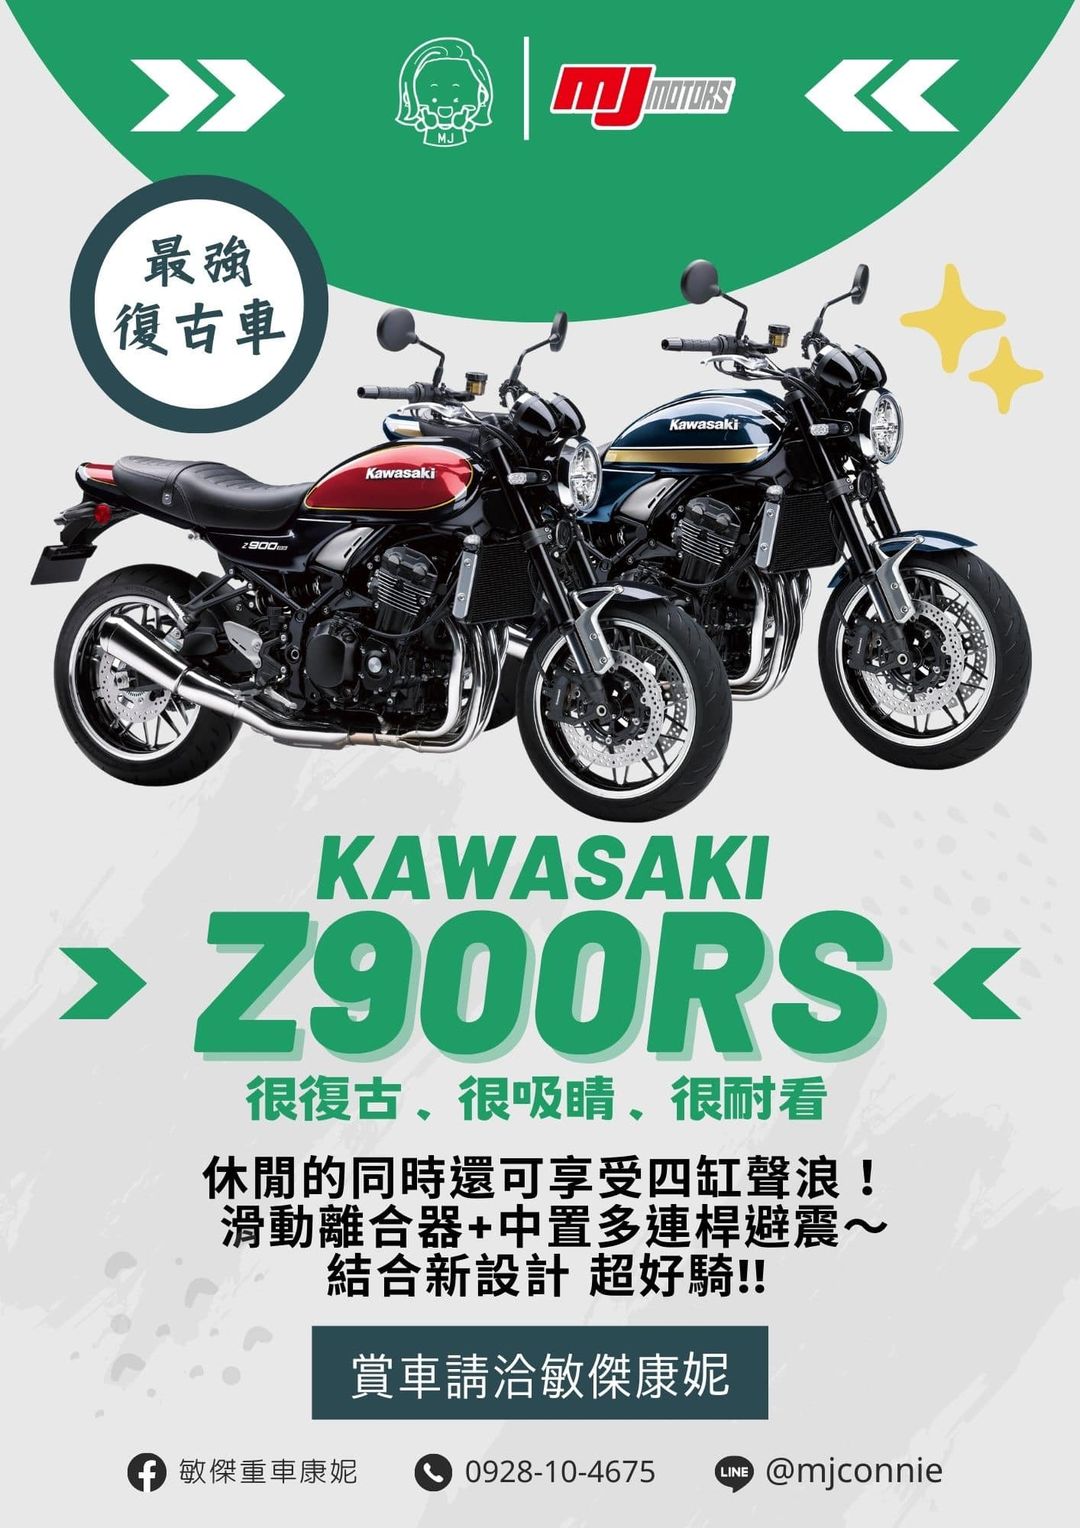 KAWASAKI Z900RS新車出售中 『敏傑康妮』Kawasaki Z900RS 四缸聲浪 迷人好聽 馬力足夠 歡迎您一同加入RS復古車行列 價格歡迎詢問 | 敏傑車業資深銷售專員 康妮 Connie